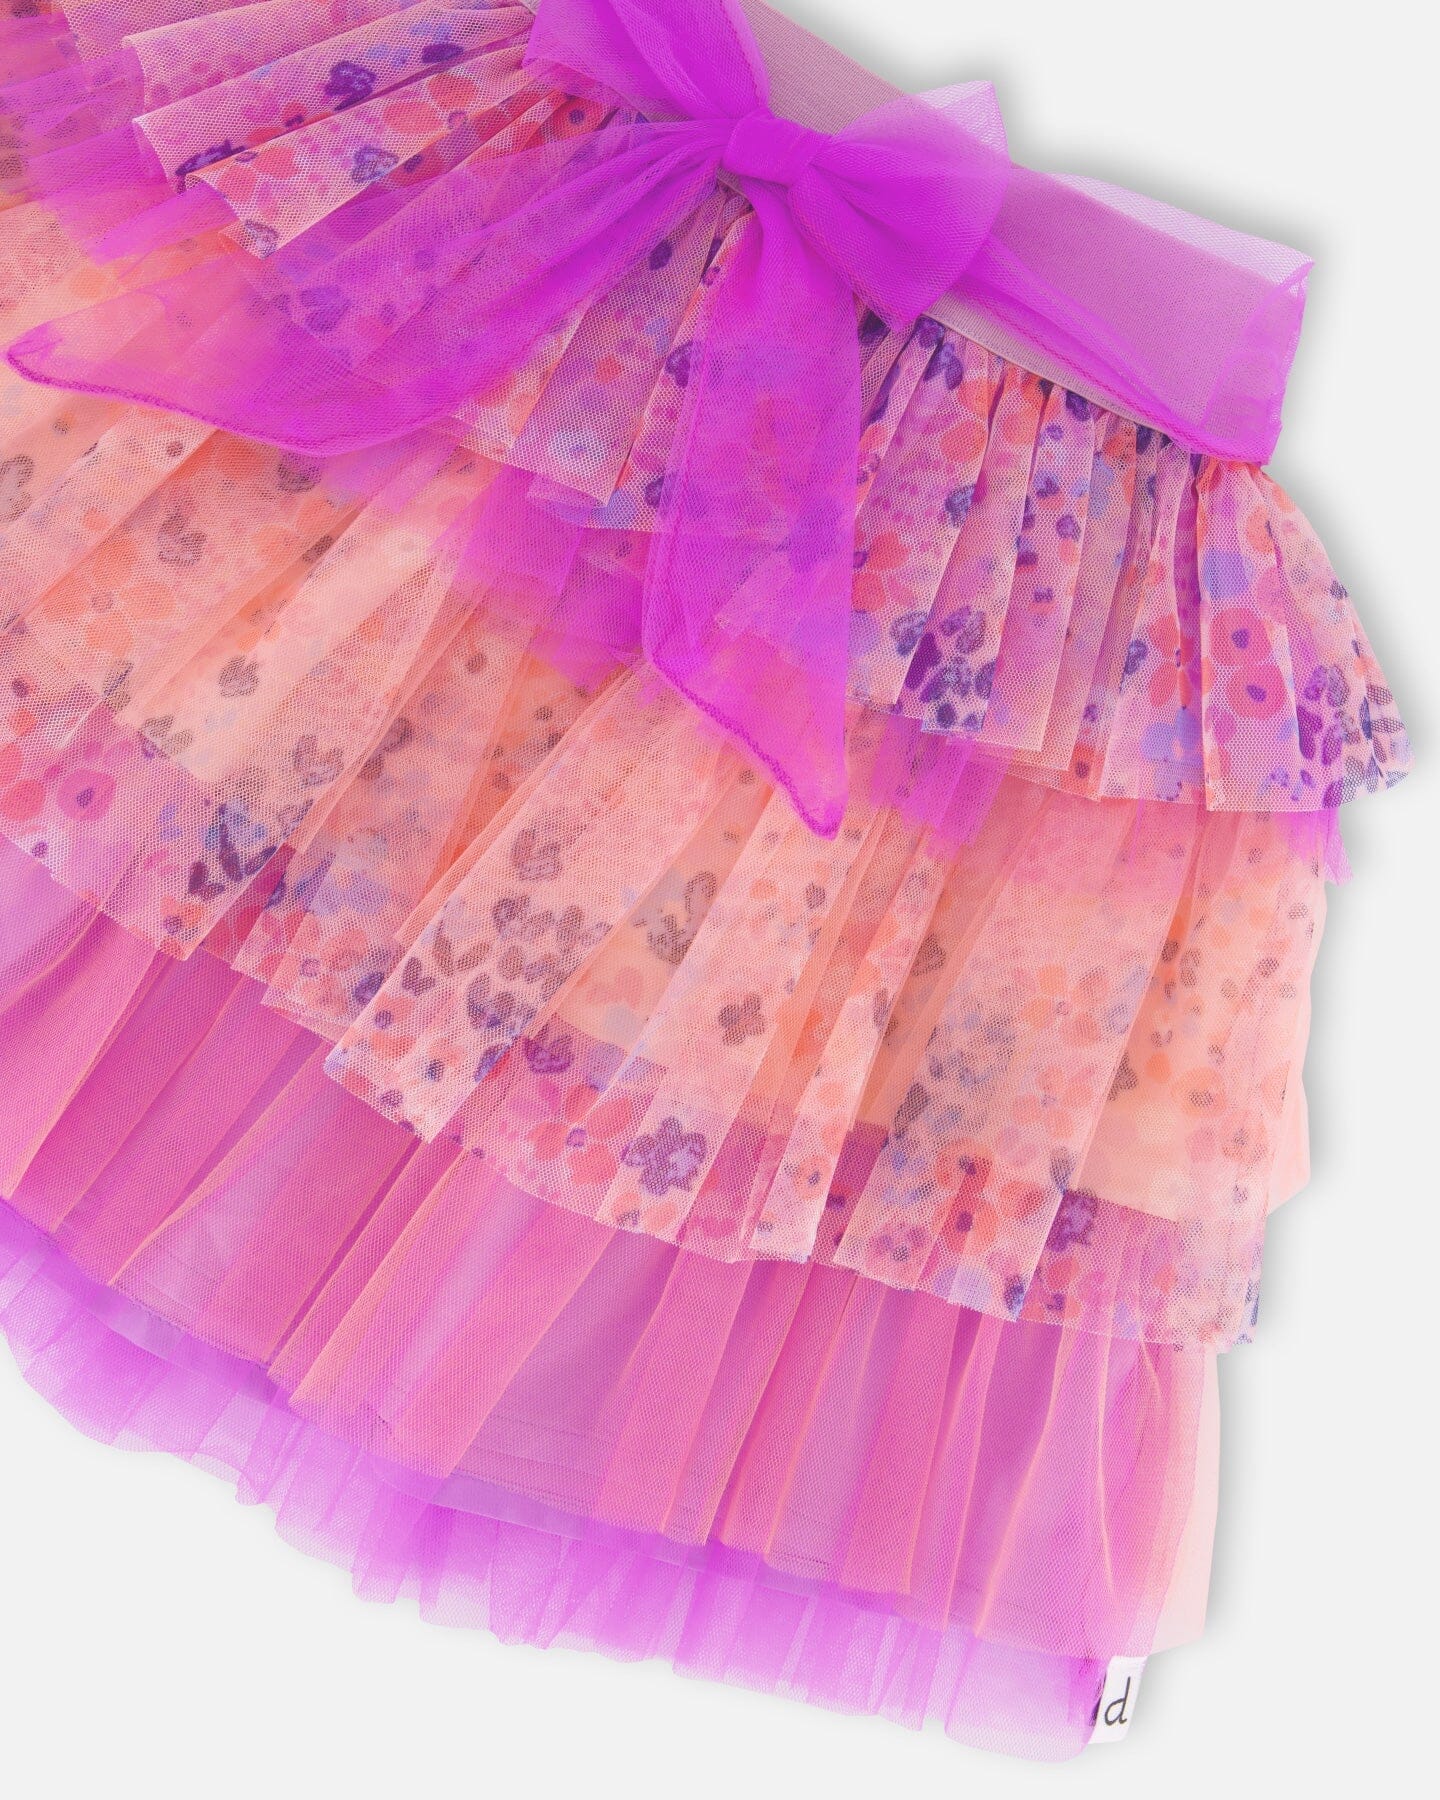 Ruffle Tulle Mesh Skirt Lavender Printed Fields Flowers - F30I80_000